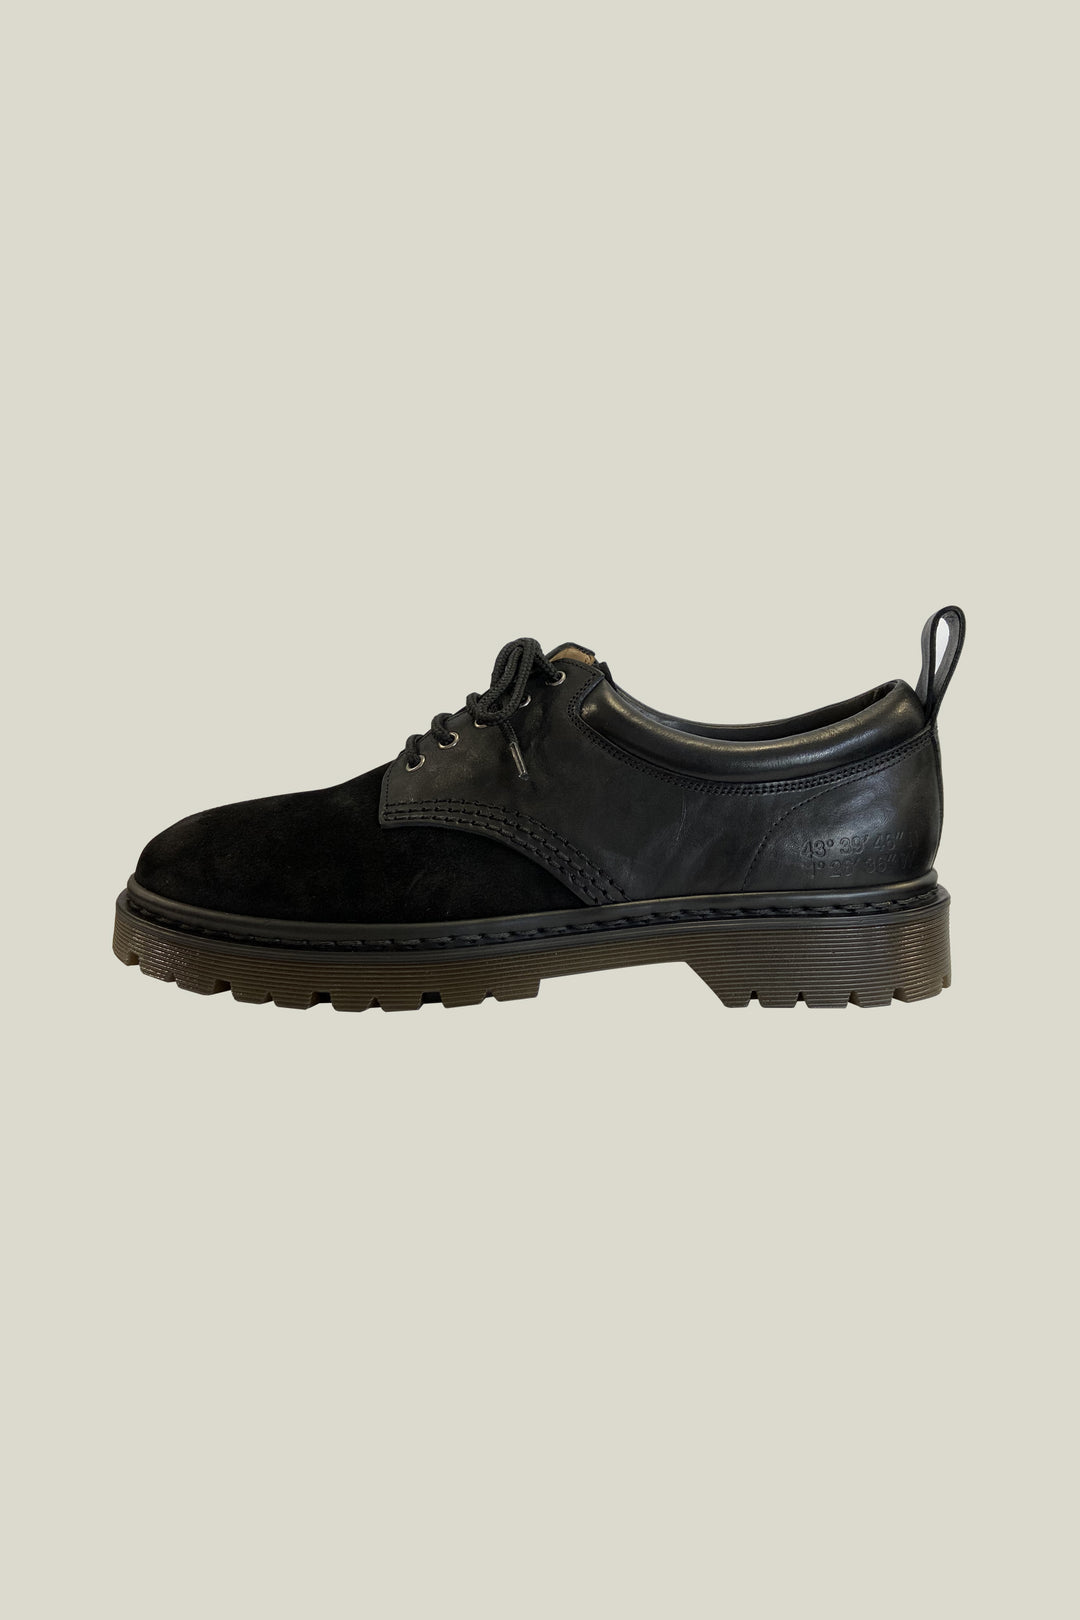 Notre modèle "Patrol", une chaussure à lacets robuste, en cuir avec une semelle à crampons, couleur noir.